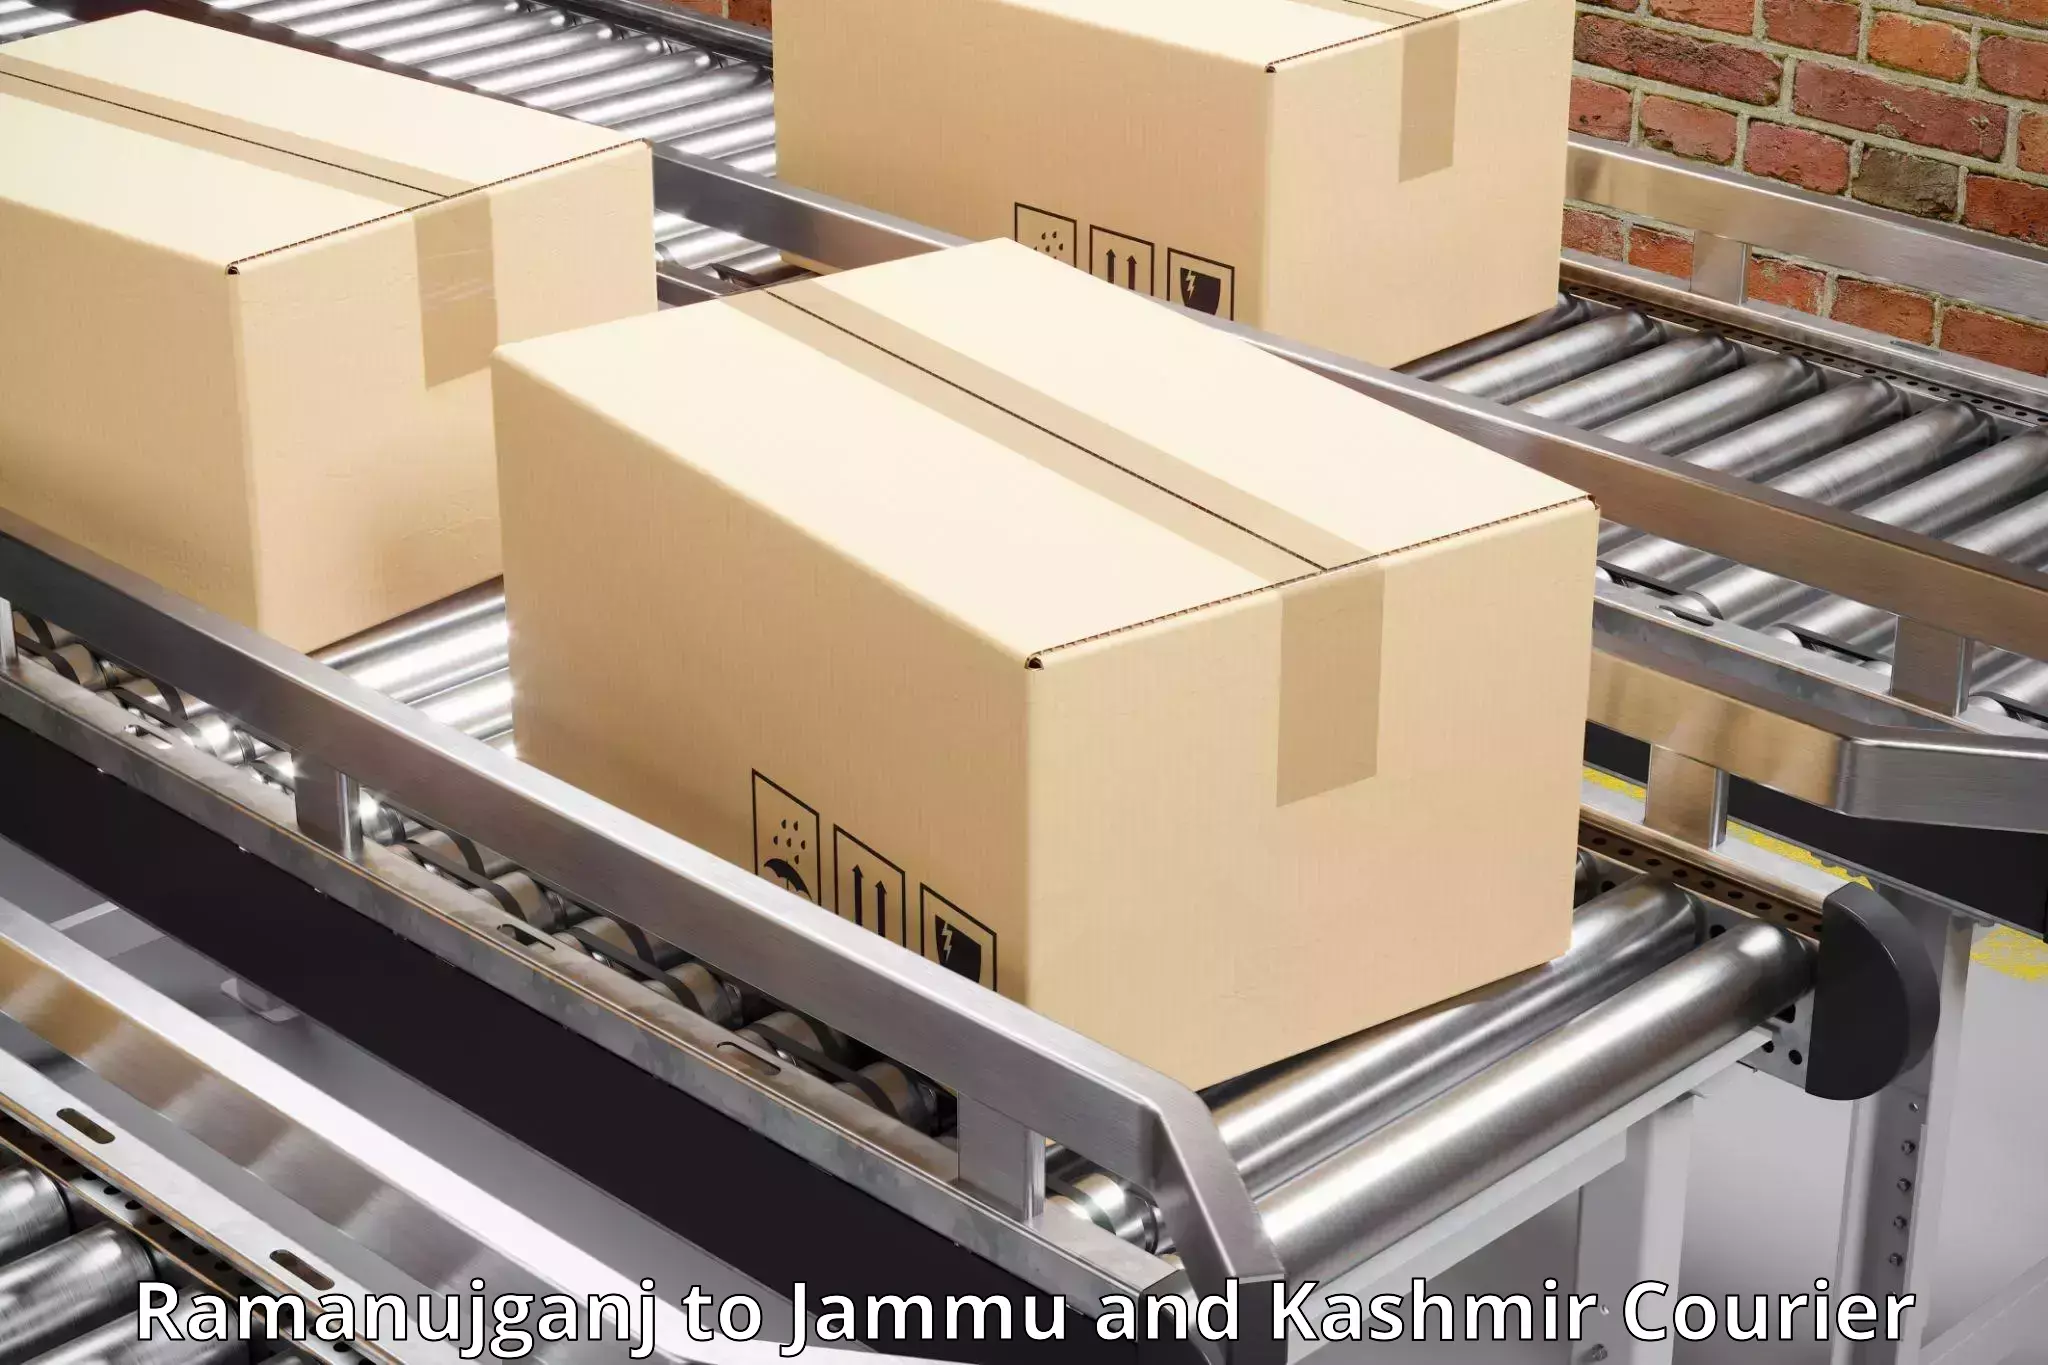 Professional courier handling Ramanujganj to Jammu and Kashmir